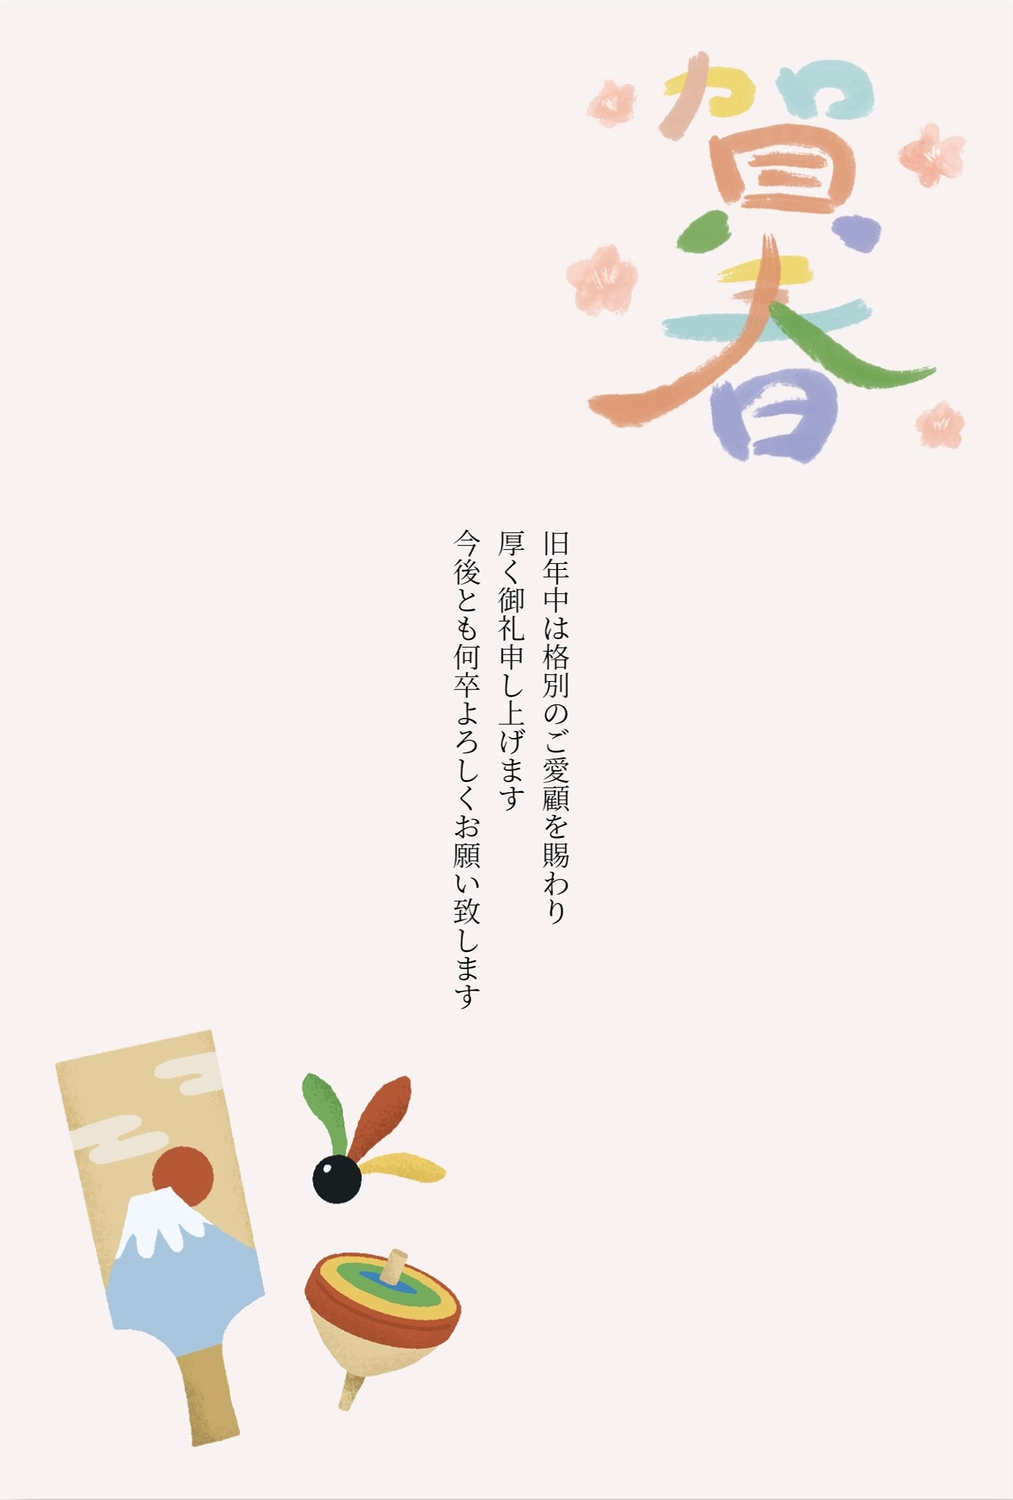 正月遊び年賀状　縦, hoa, Sự minh họa, Đầy màu sắc, Thiệp năm mới mẫu